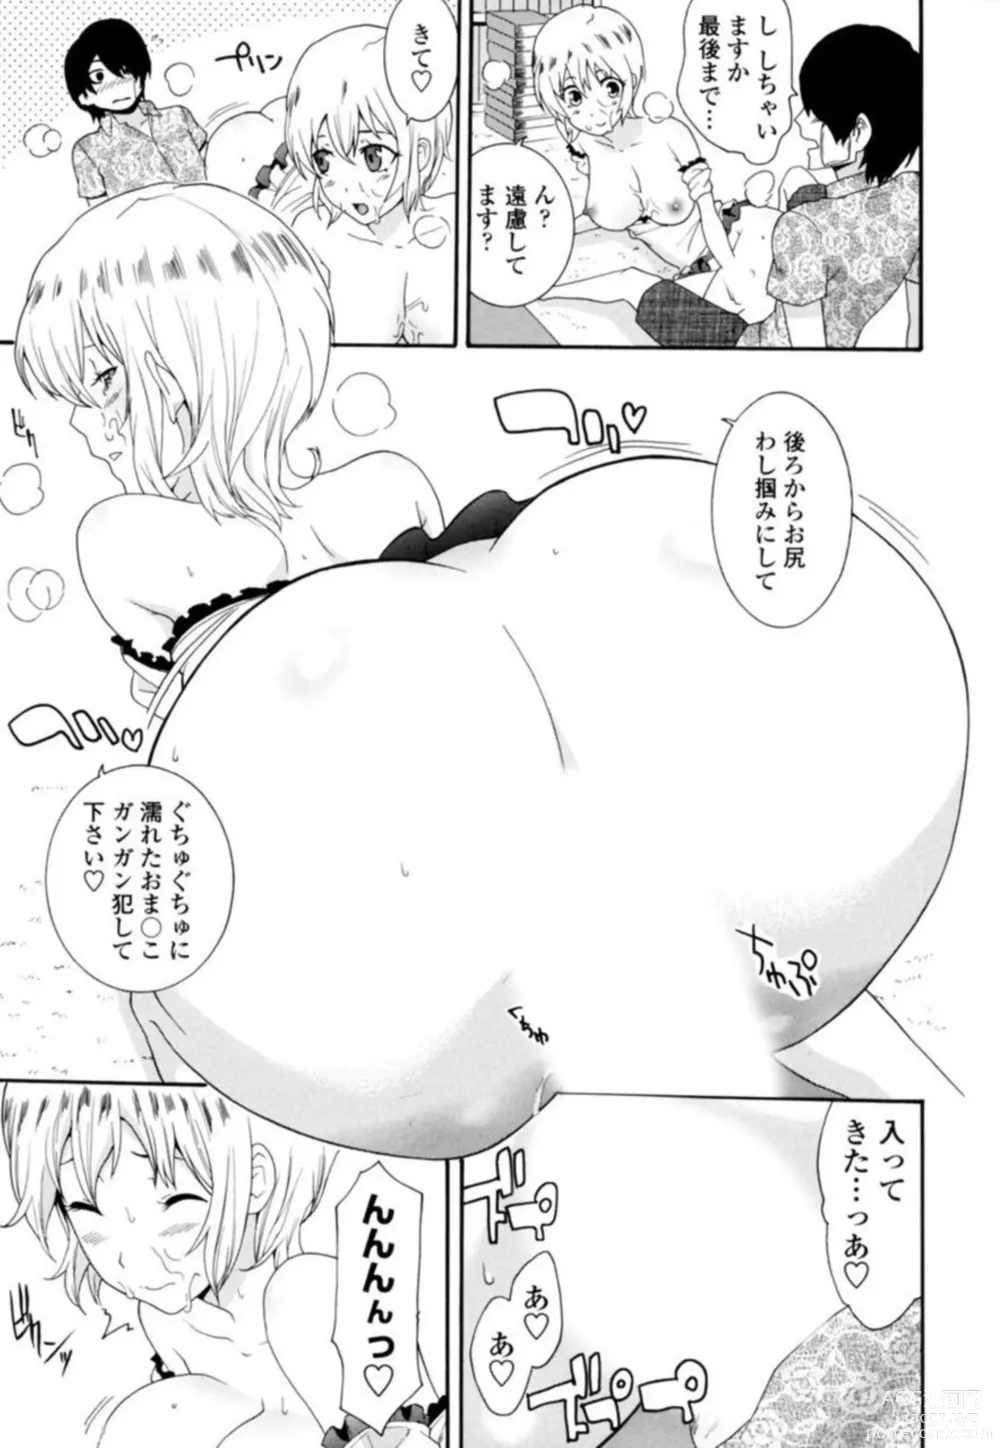 Page 17 of manga Senpai no Karada de Massāji! Mashumaro Oppai no Yūwaku 1